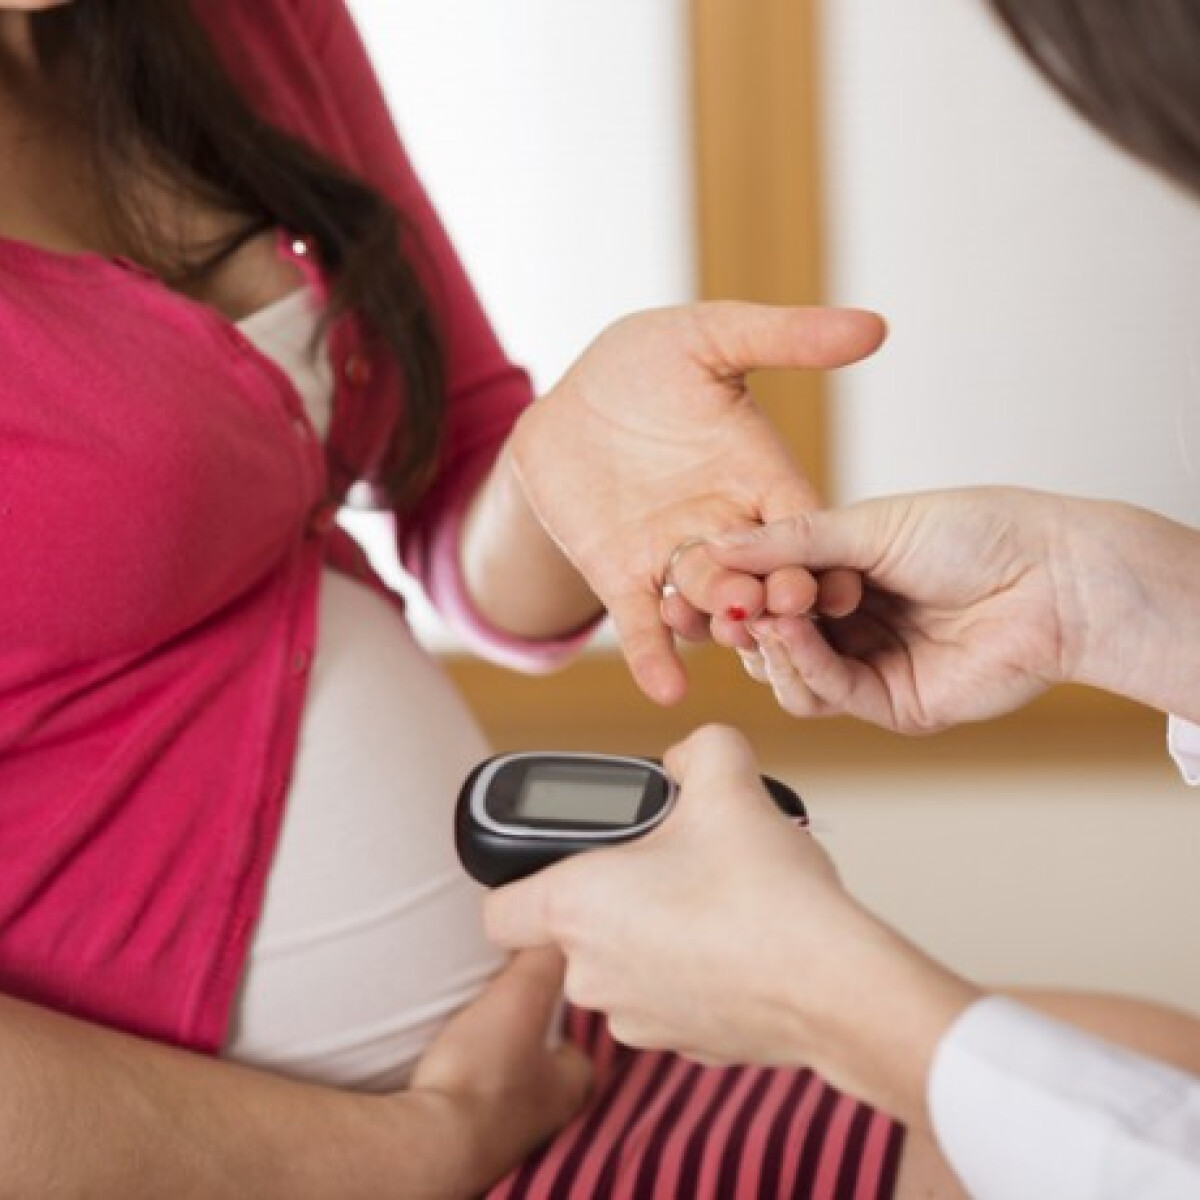 Terhességi diabétesz: a kismamák rémálma. Tudj meg mindent erről a betegségről!